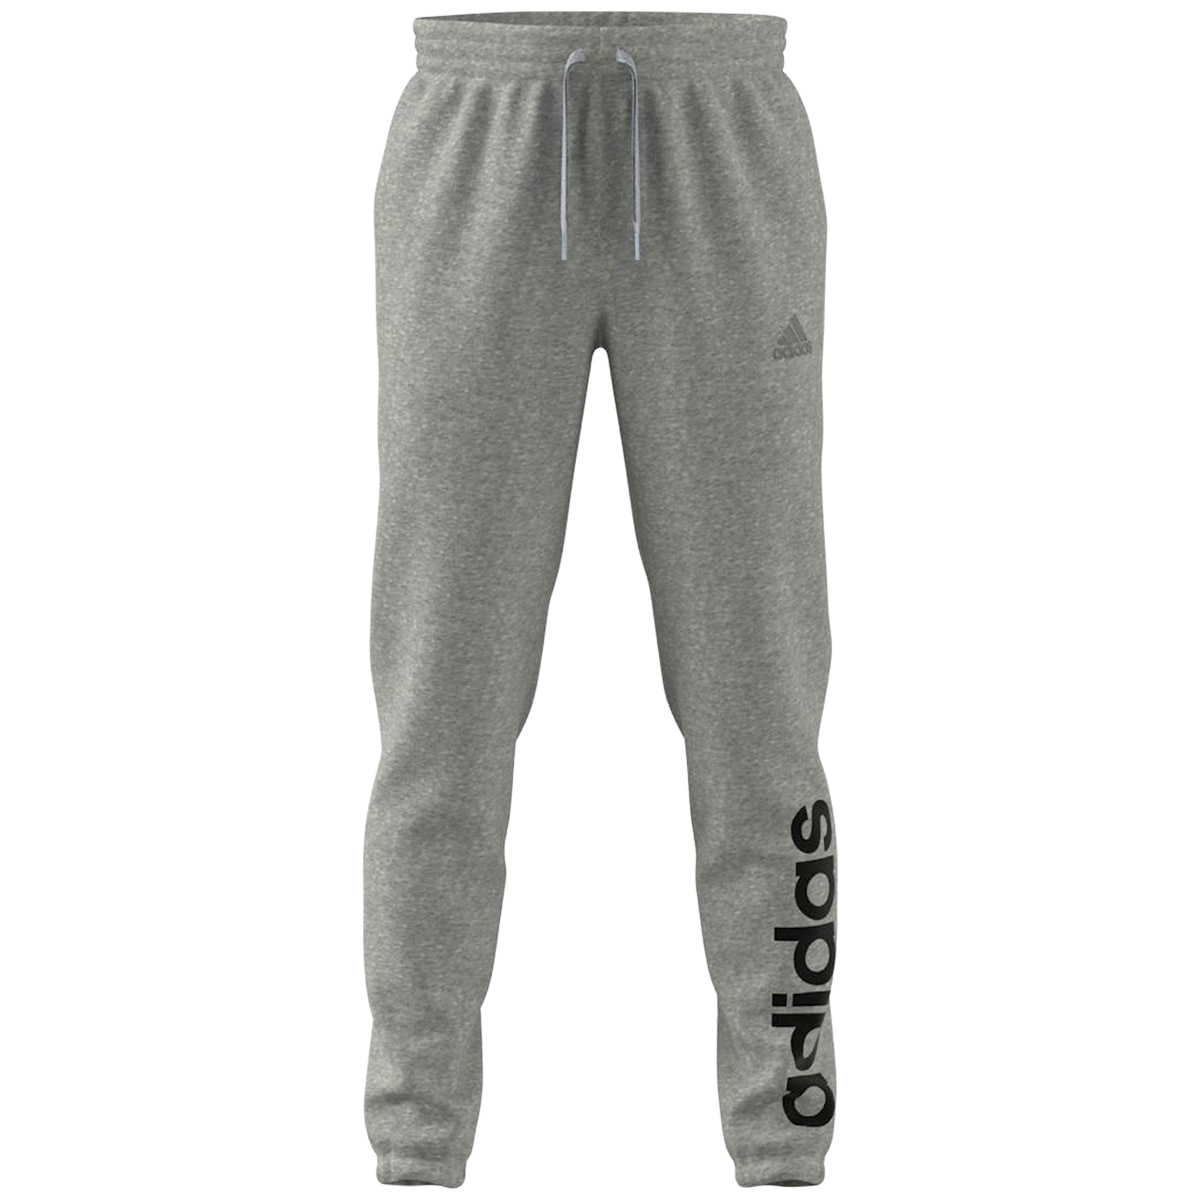 Adidas Essentials Cuff Logo Pant - Heather Grey | Costco ...